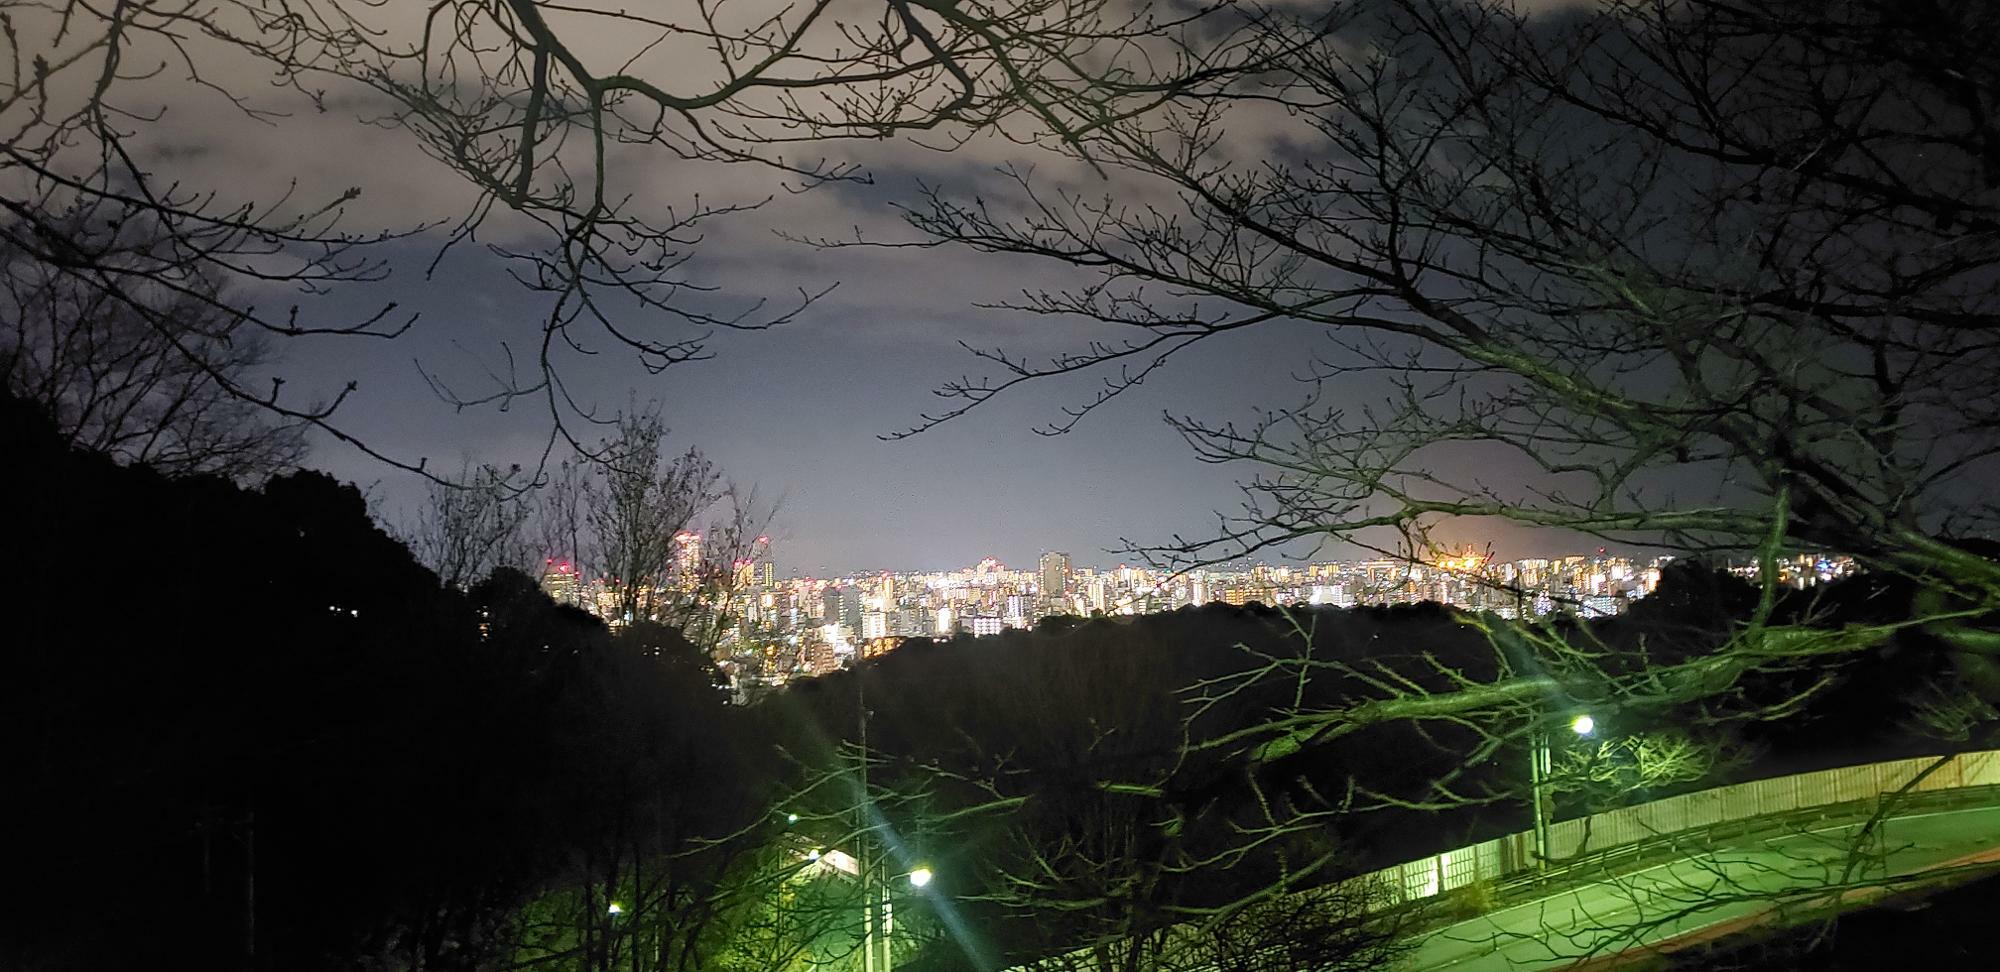 竜王公園周辺は夜景を鑑賞できるポイントがいくつかある